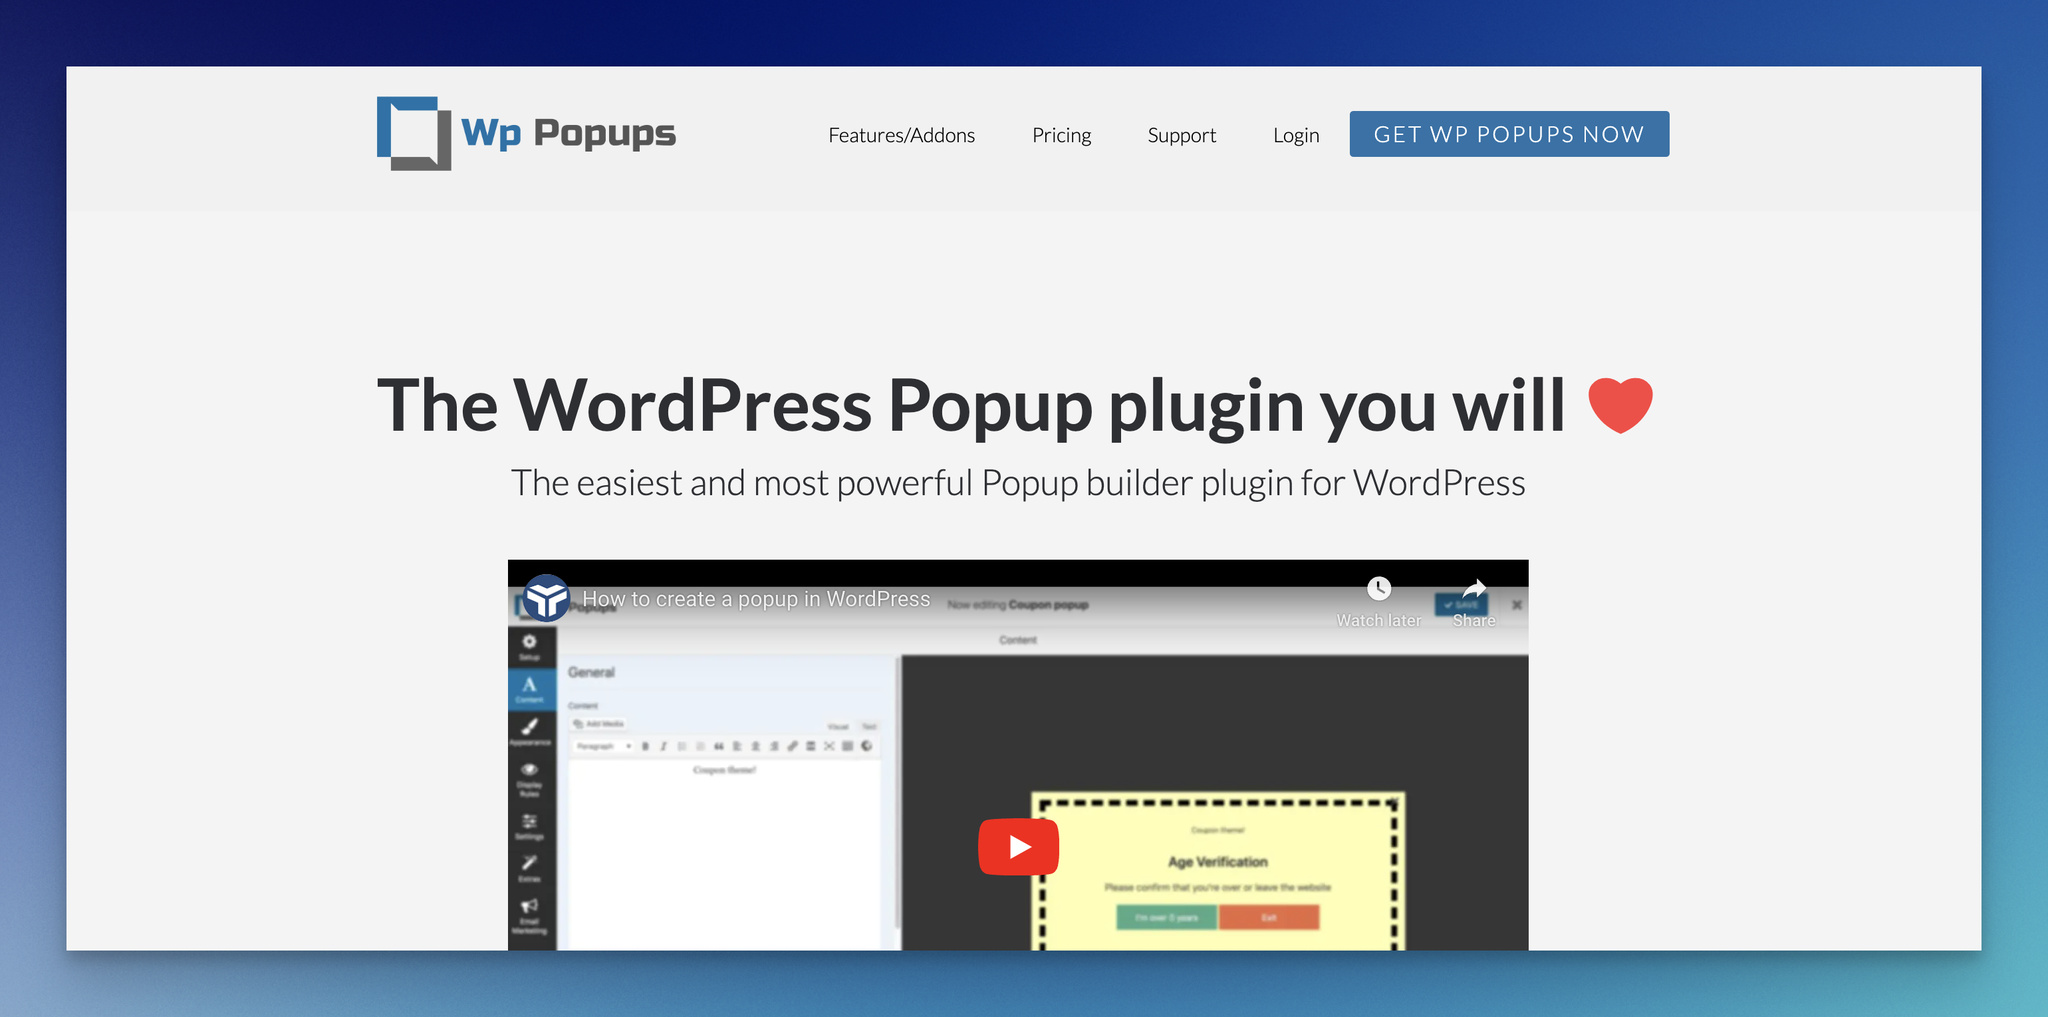 landing page of WP Popups, WordPress popup plugin